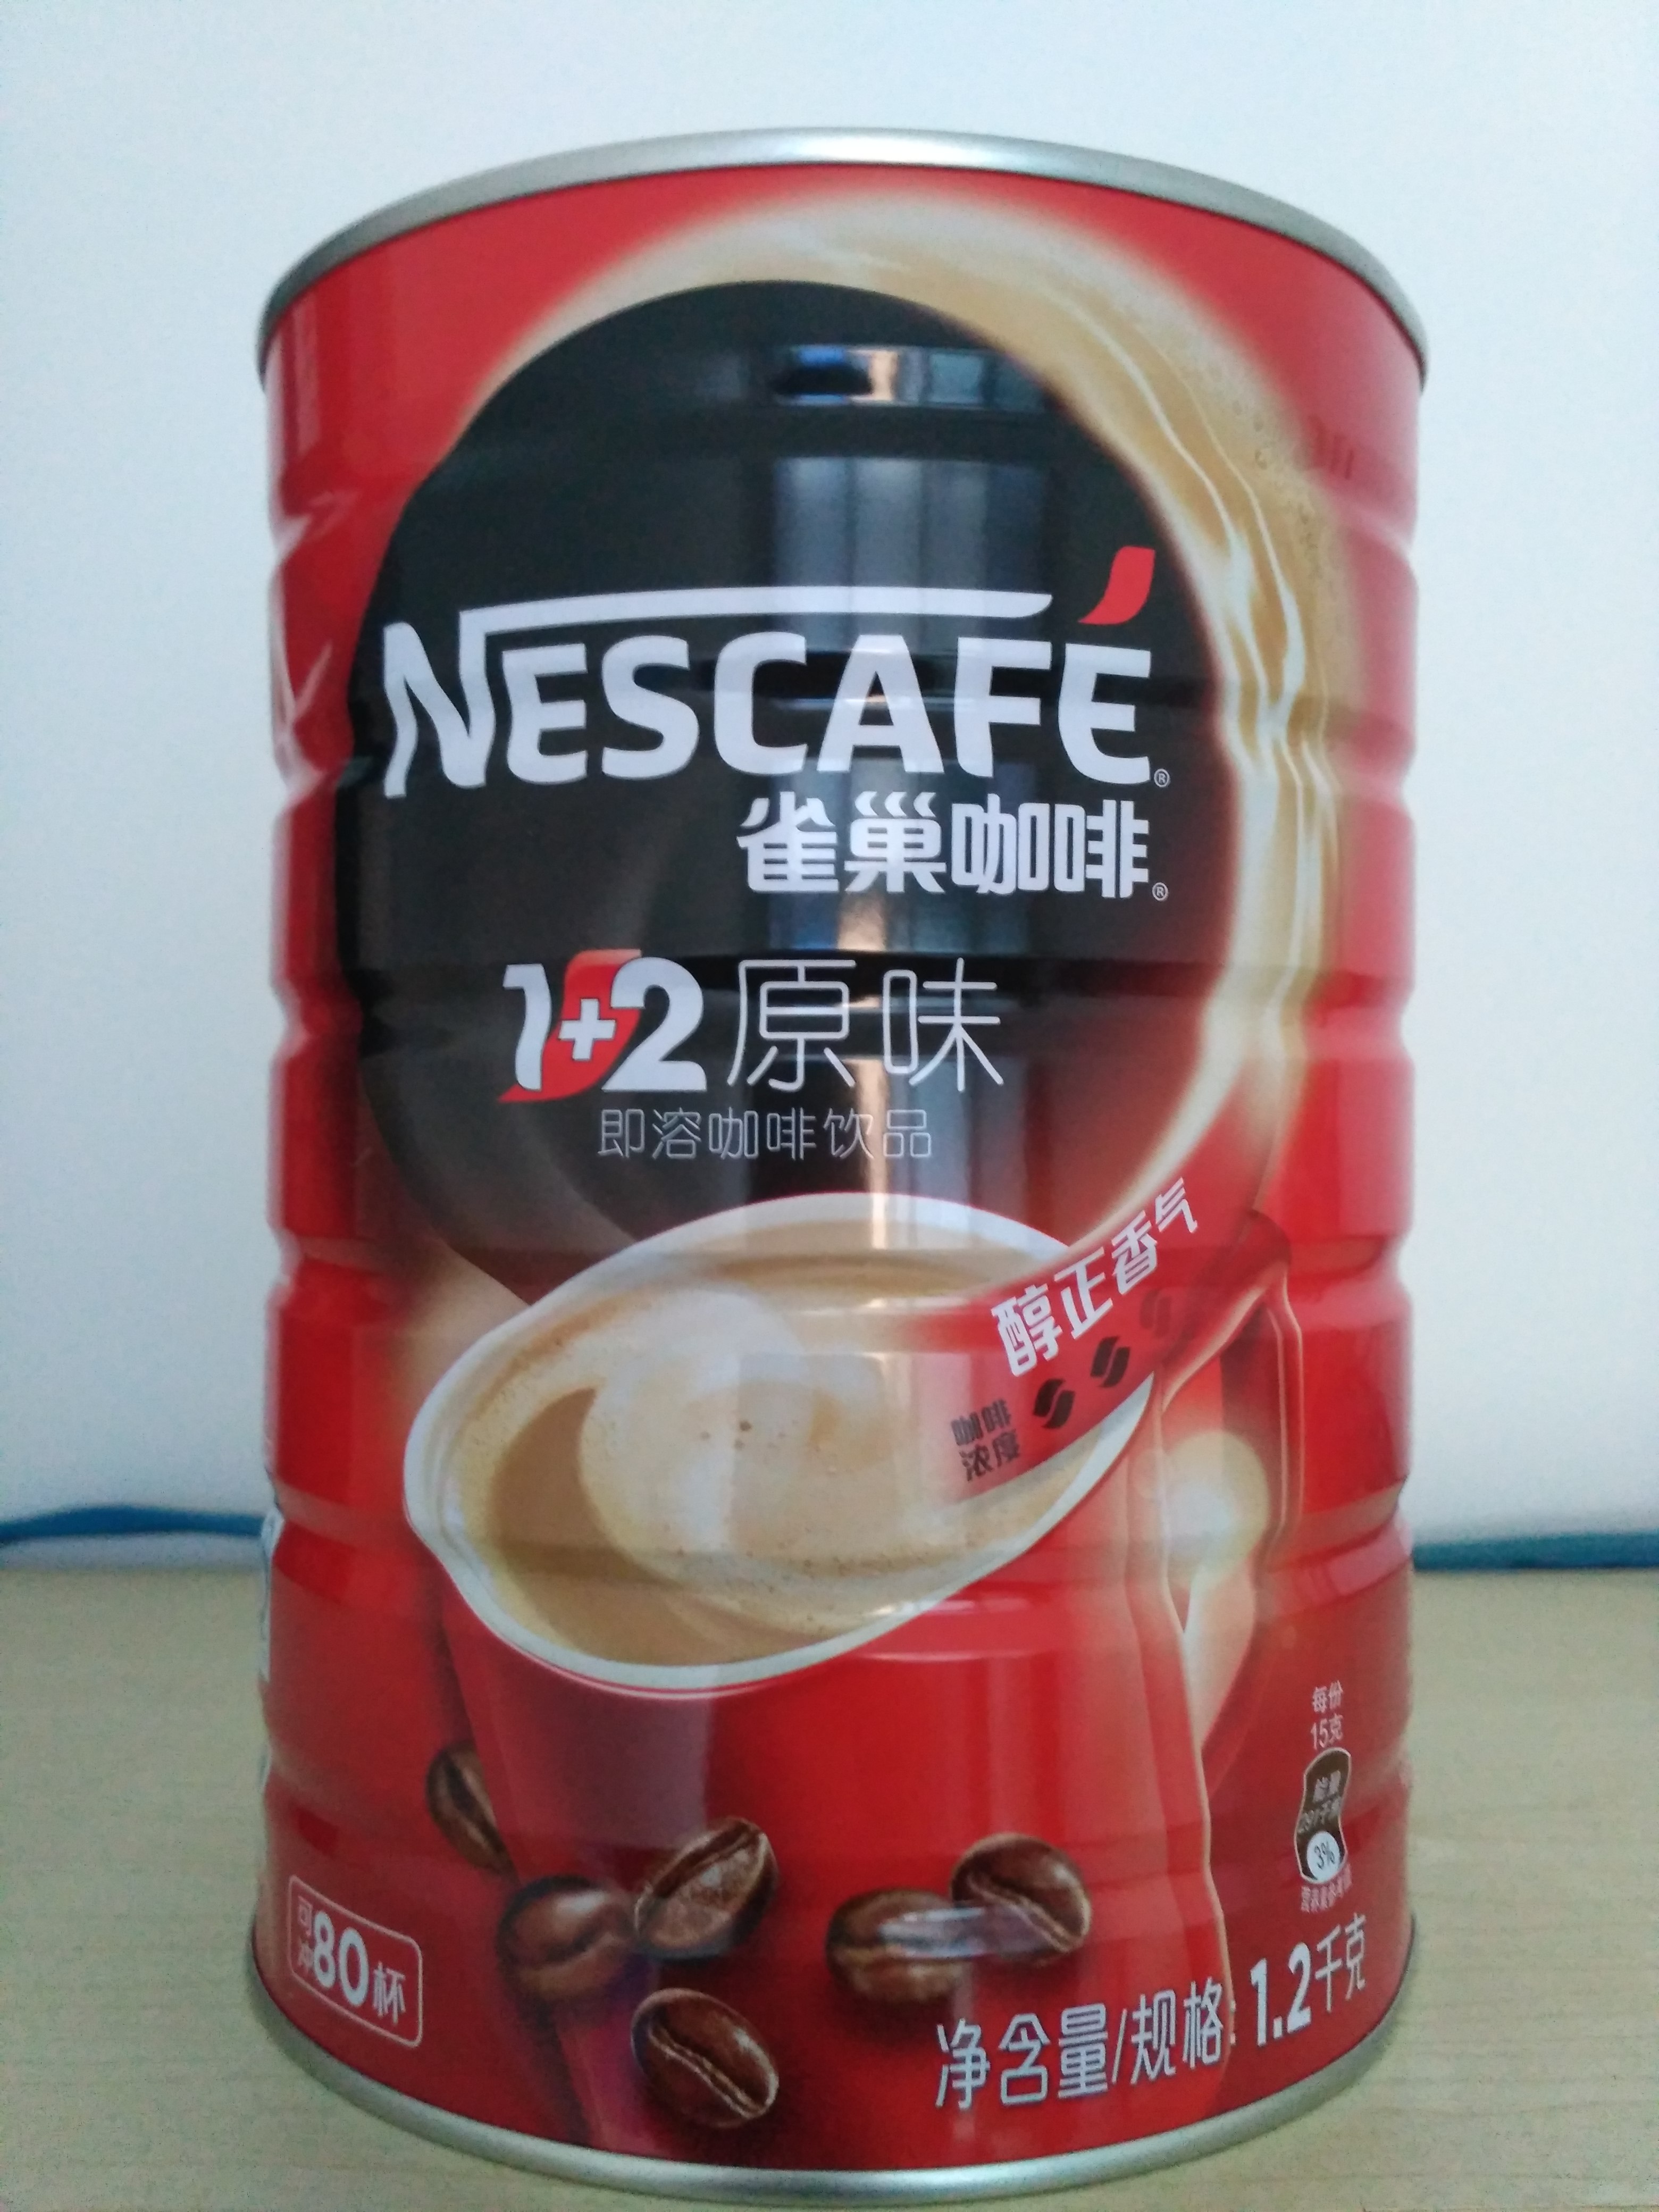 雀巢nestle 1 2原味咖啡12kg 满一罐送咖啡杯子